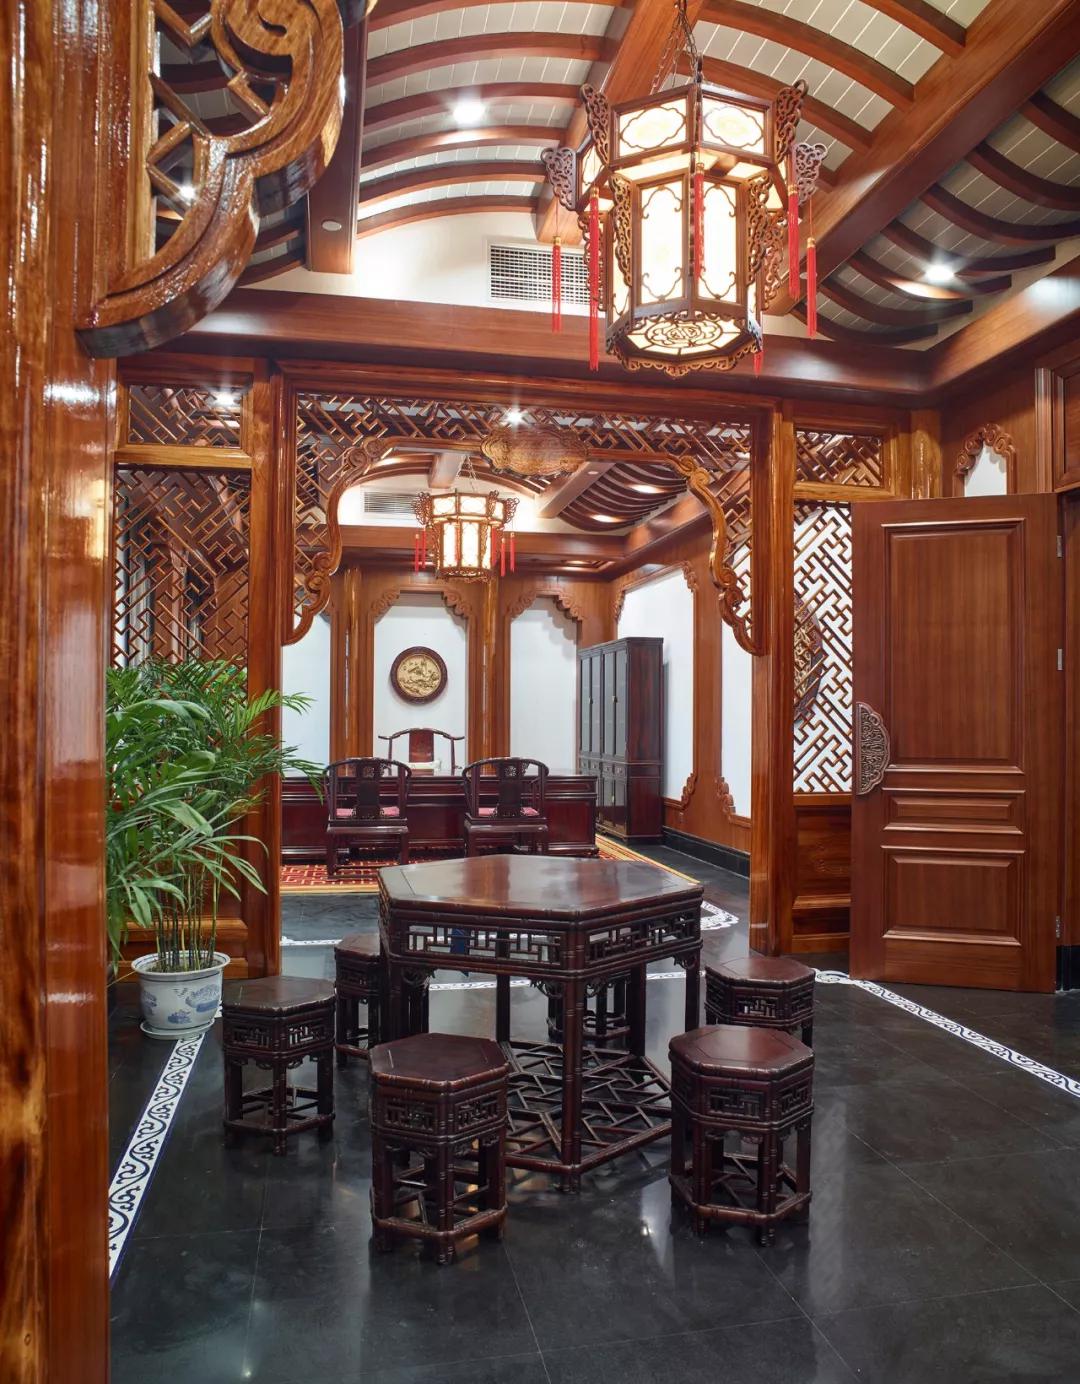 南林苑现代美式红木家具客厅布置设计装修效果图 – 设计本装修效果图